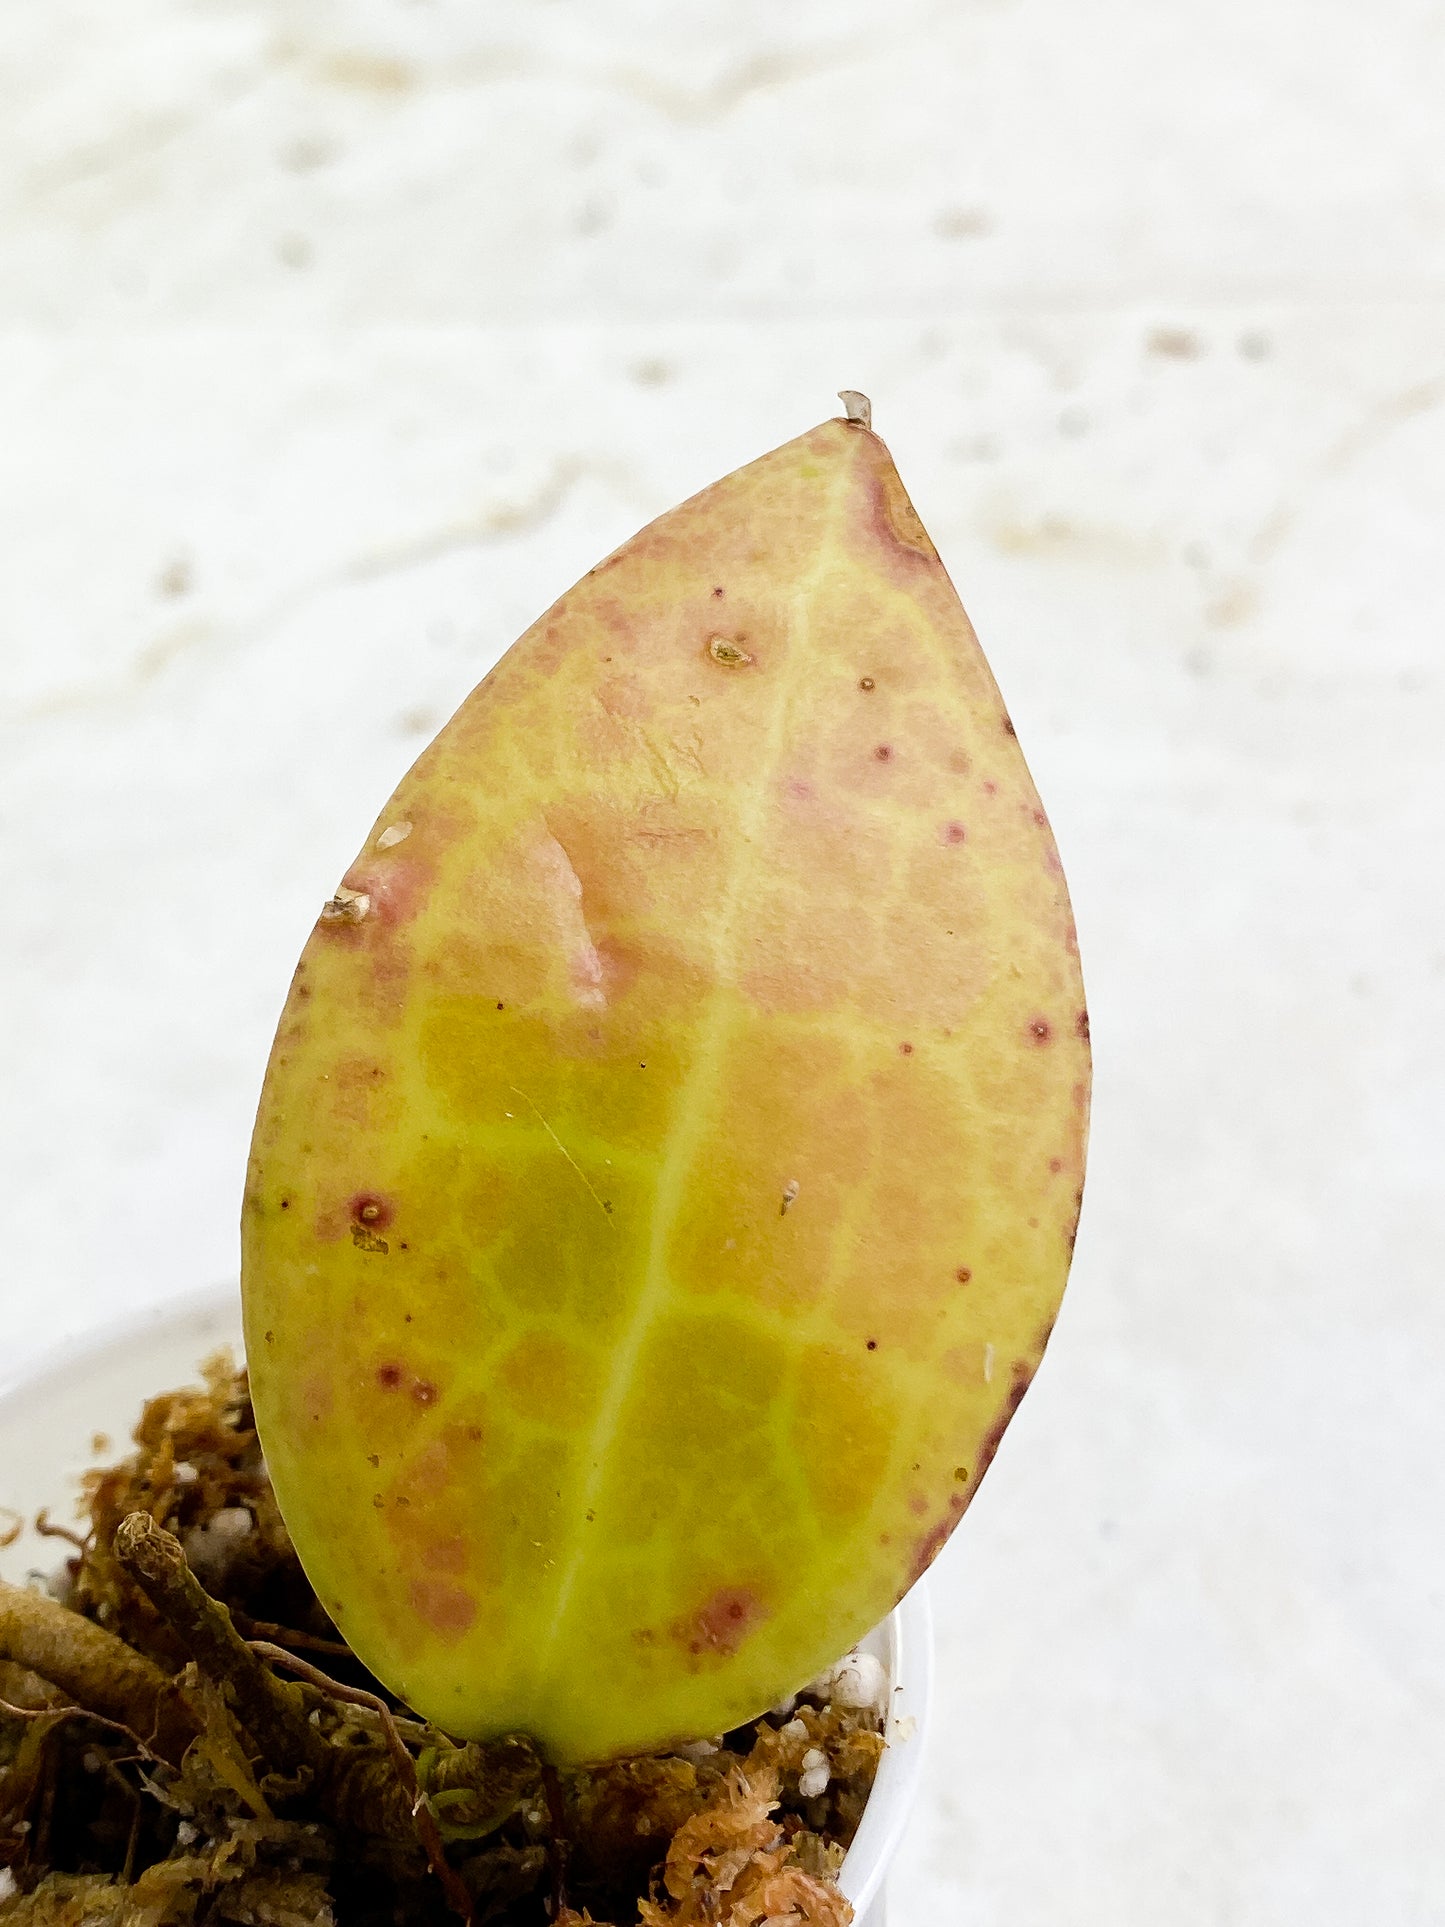 Hoya sulawesi gps 8867 2 leaves  slightly rooted sunstressed